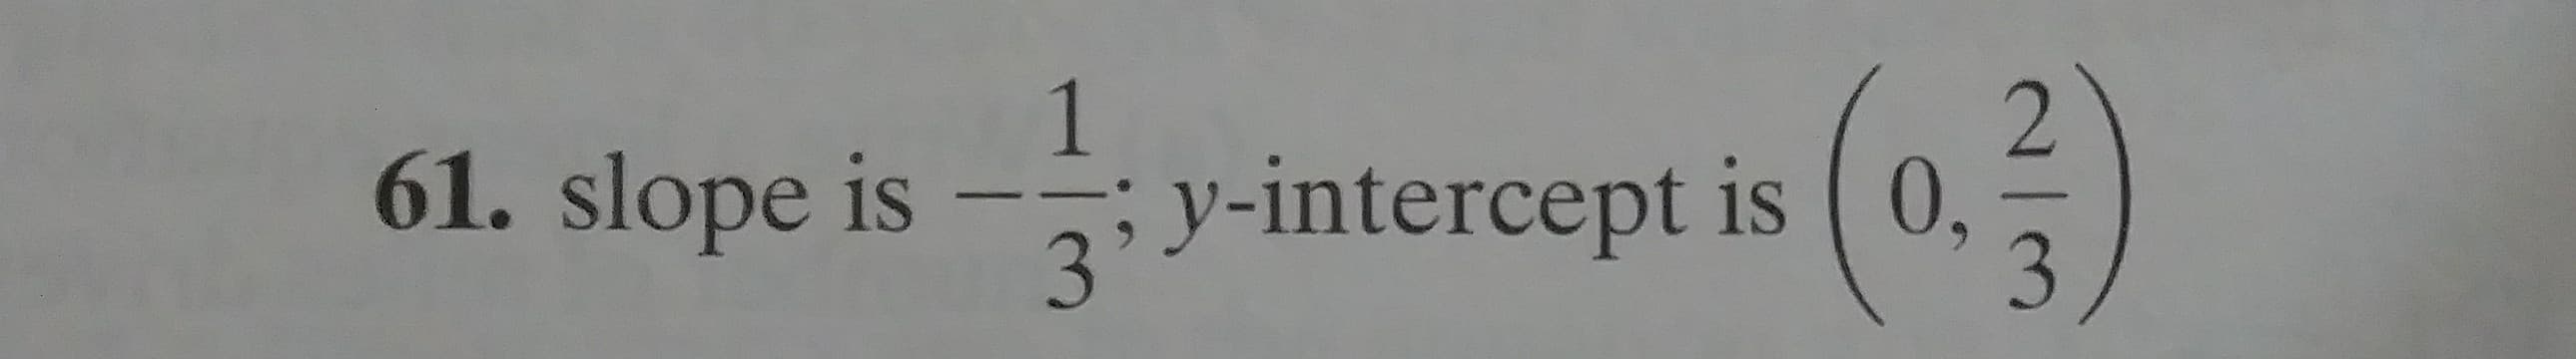 1
61. slope is
3:V-intercept is (0,
3
